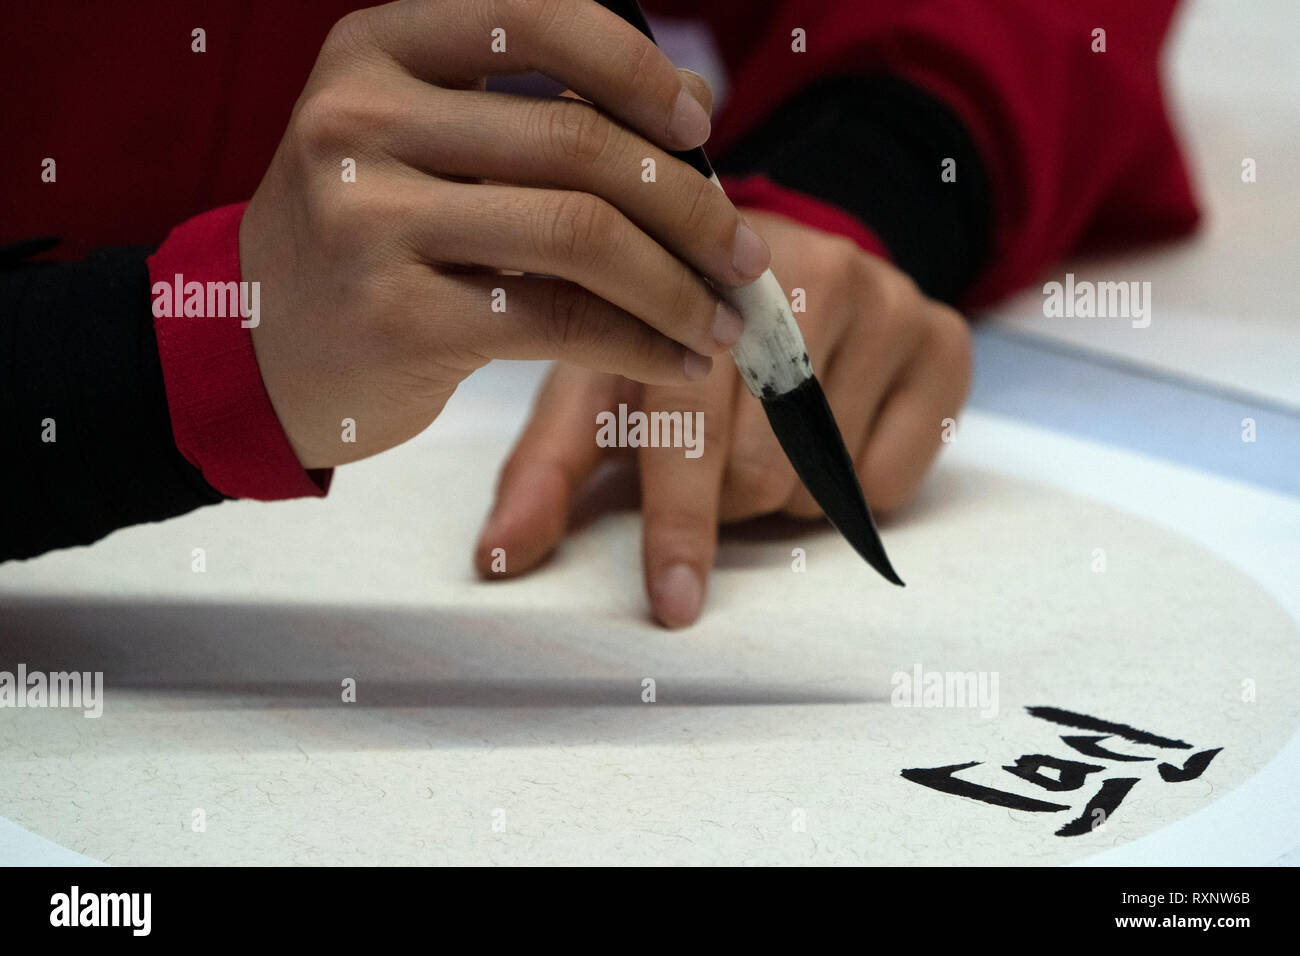 Idéogrammes japonais femme écrit avec pinceau close up detail Banque D'Images